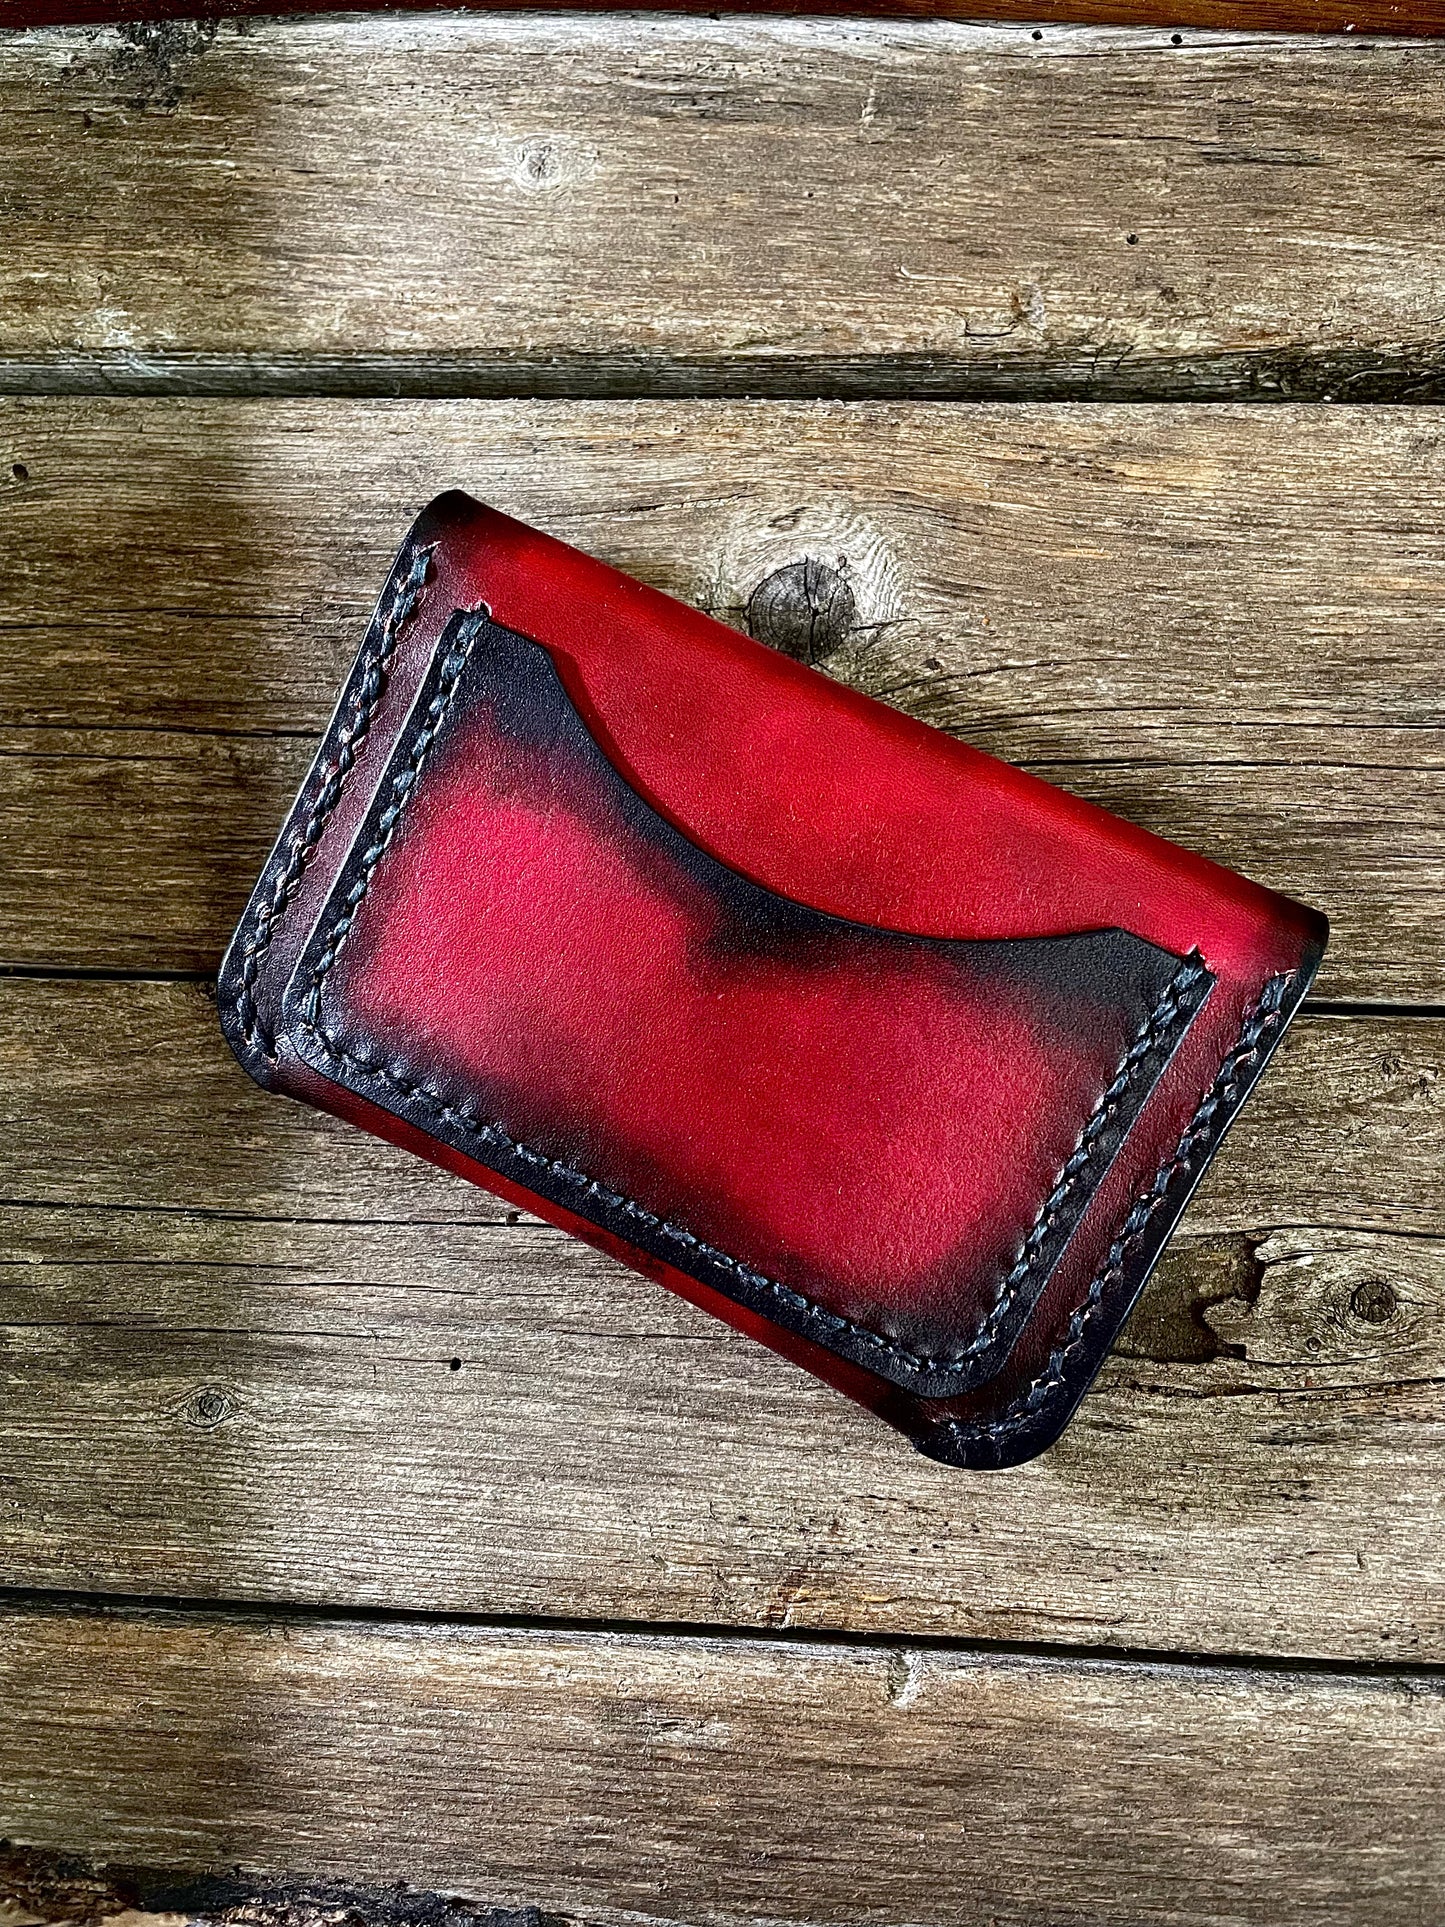 Mahogany Blood Strap Wallet